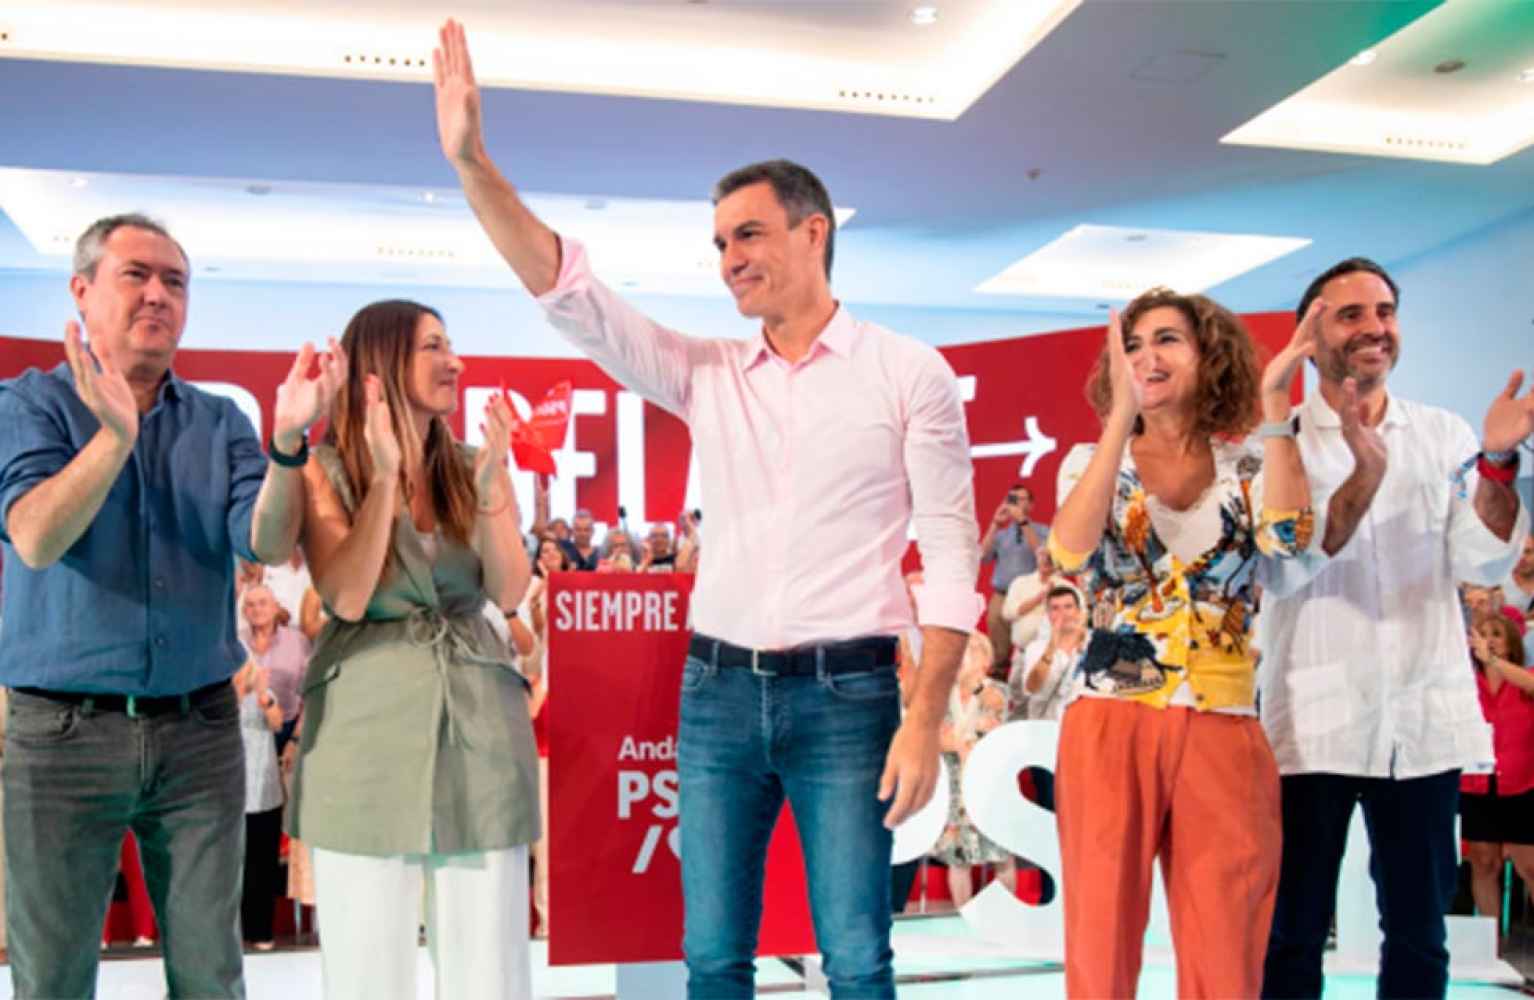 Sánchez: "la investidura de Feijóo es crónica de fracaso anunciado"